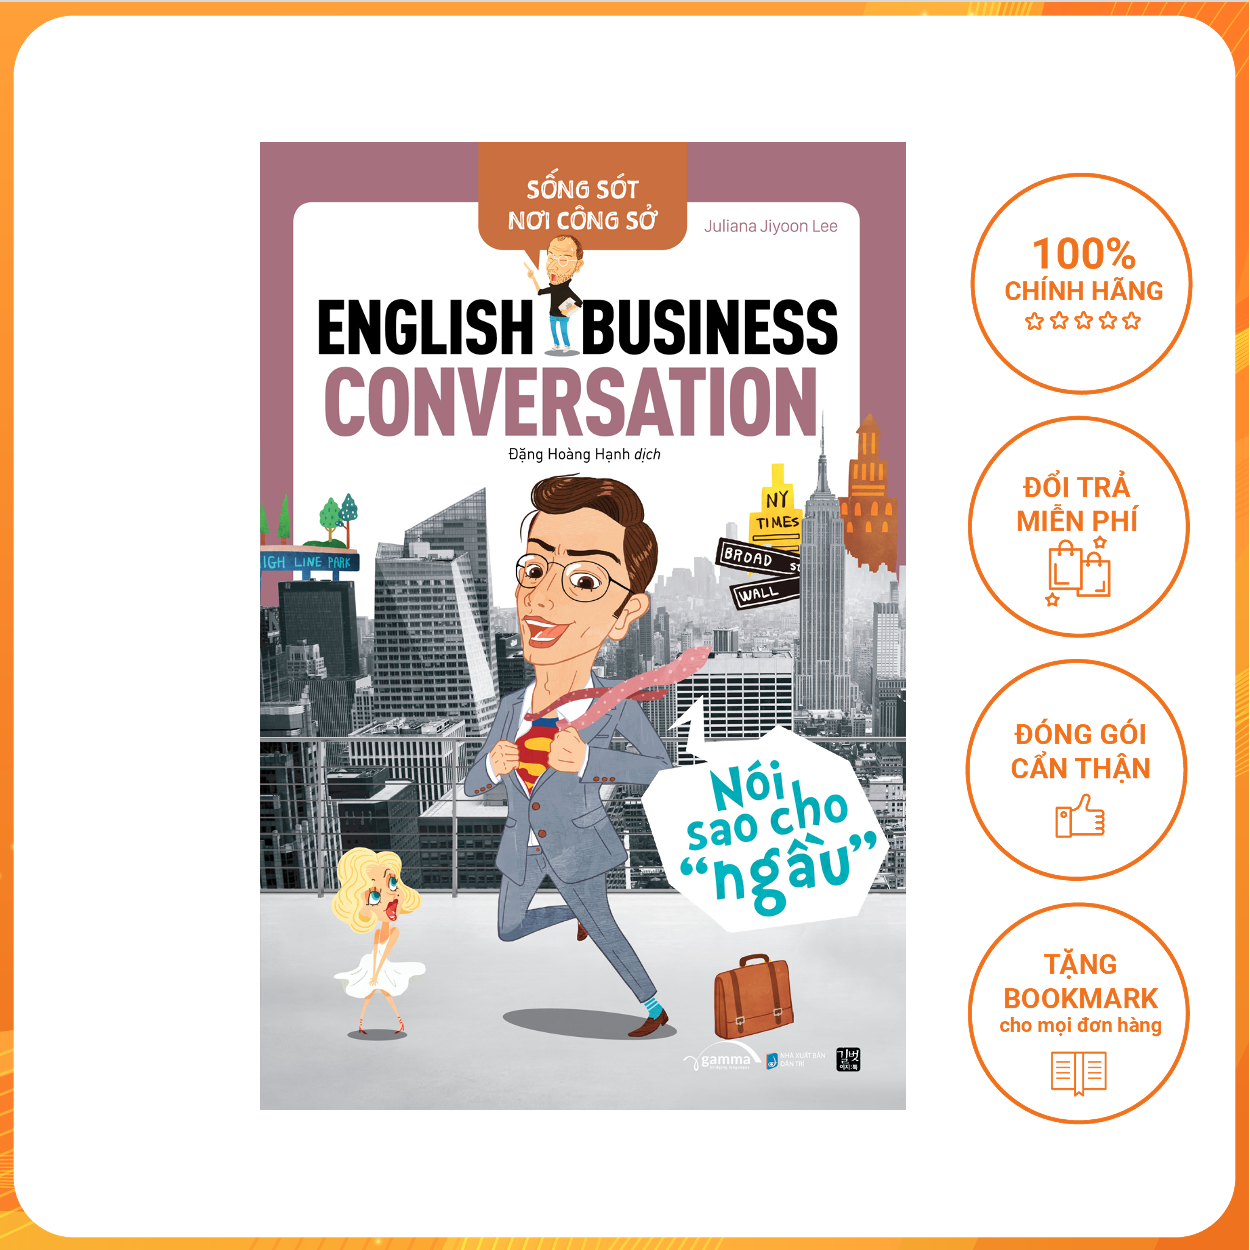 Sống Sót Nơi Công Sở: English Business Conversation – Nói sao cho “ngầu”